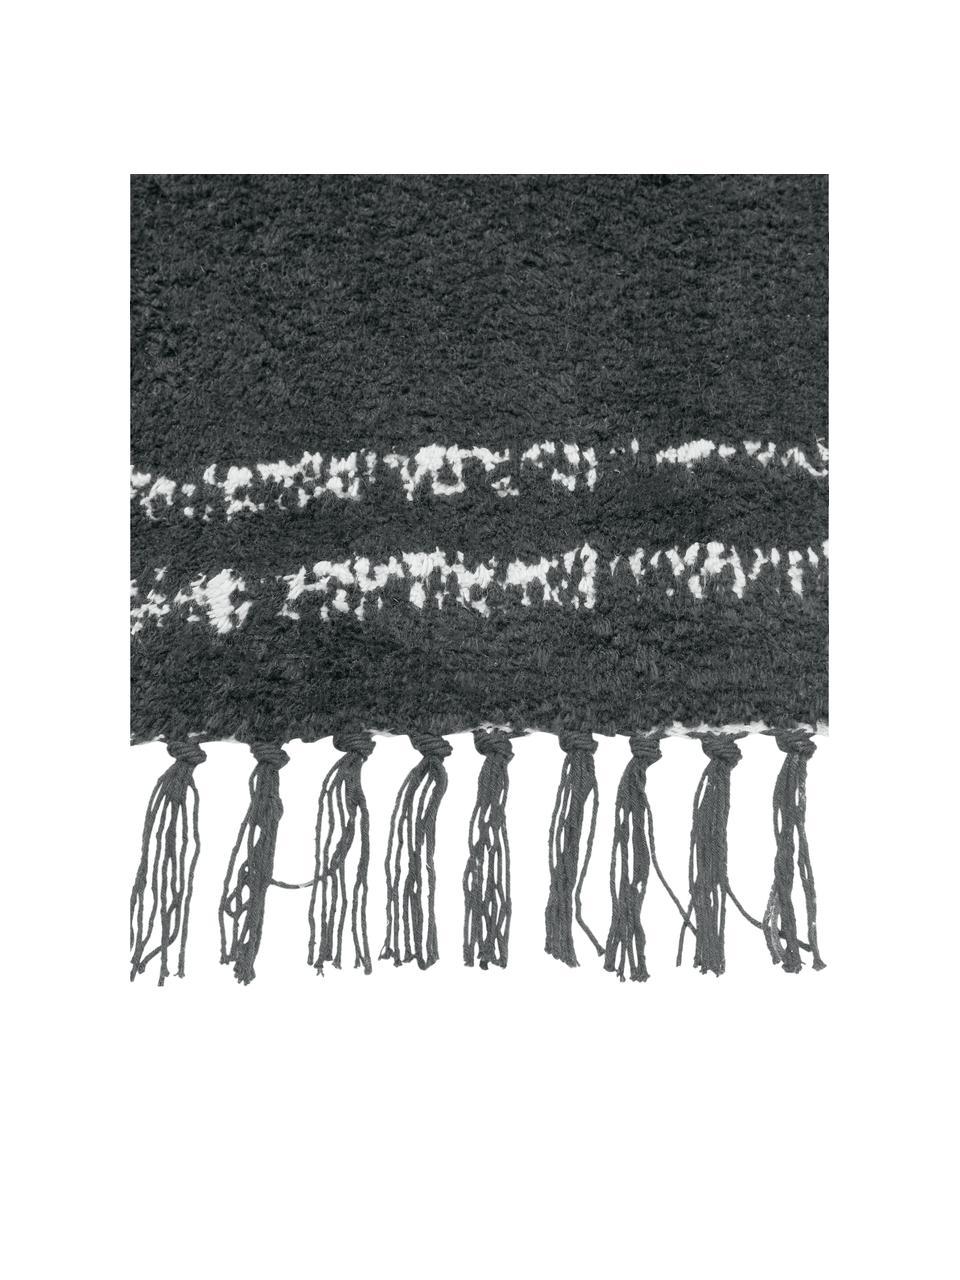 Handgetufteter Baumwollteppich Asisa mit Zickzack-Muster und Fransen, Anthrazit, B 200 x L 300 cm (Grösse L)